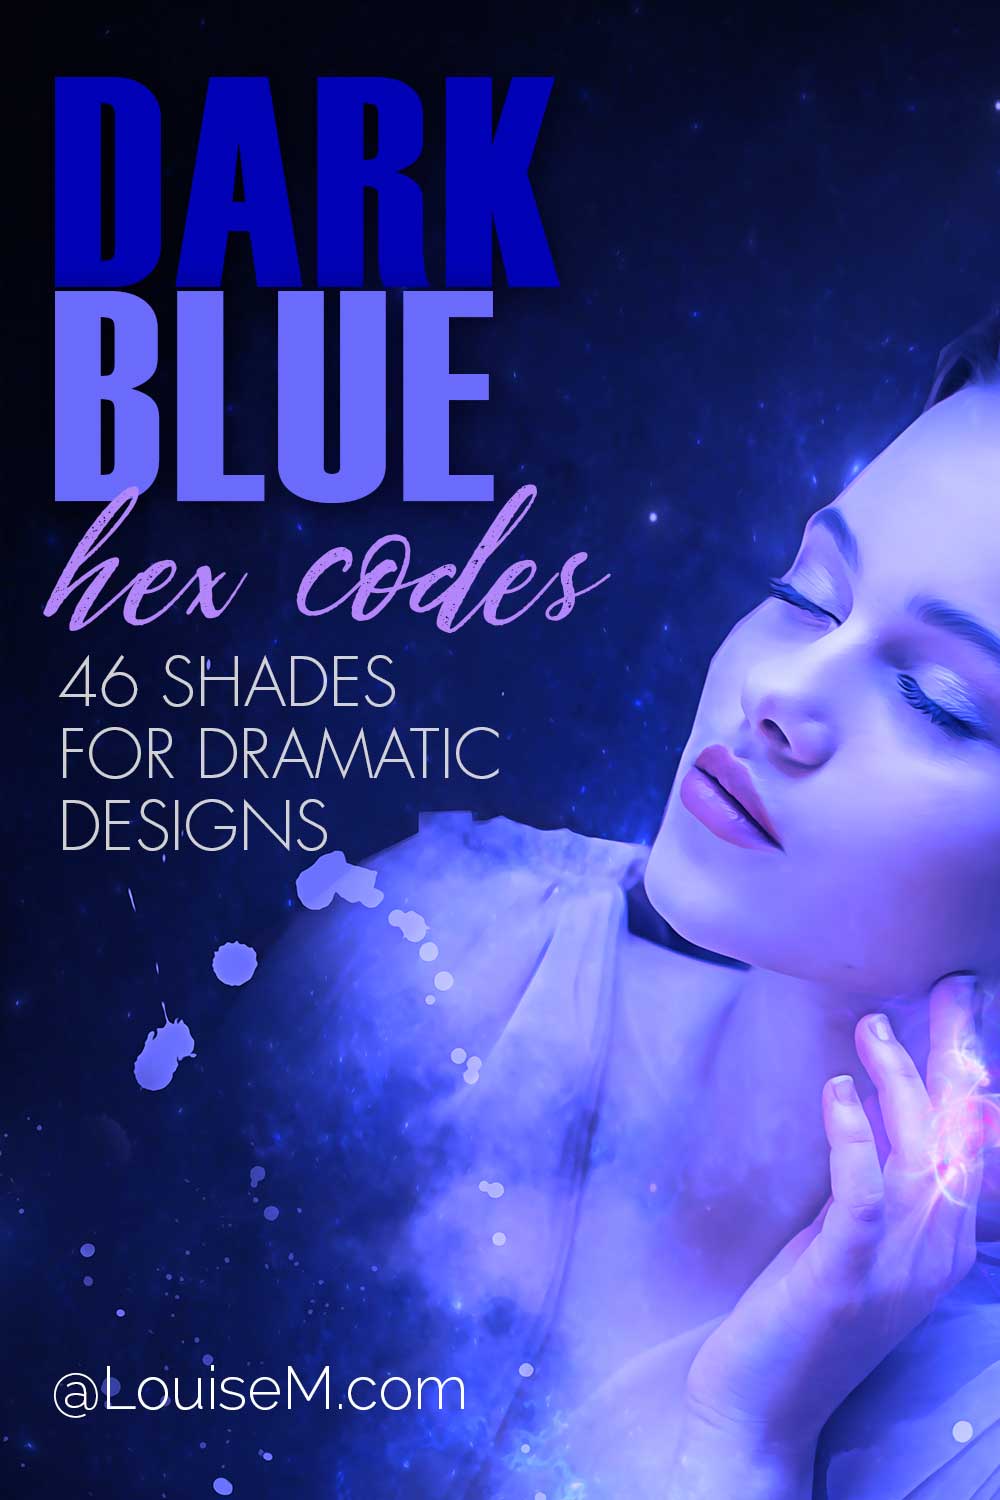 Una mujer bonita con luz azul tiene texto y códigos hexadecimales de color azul oscuro para diseños dramáticos.